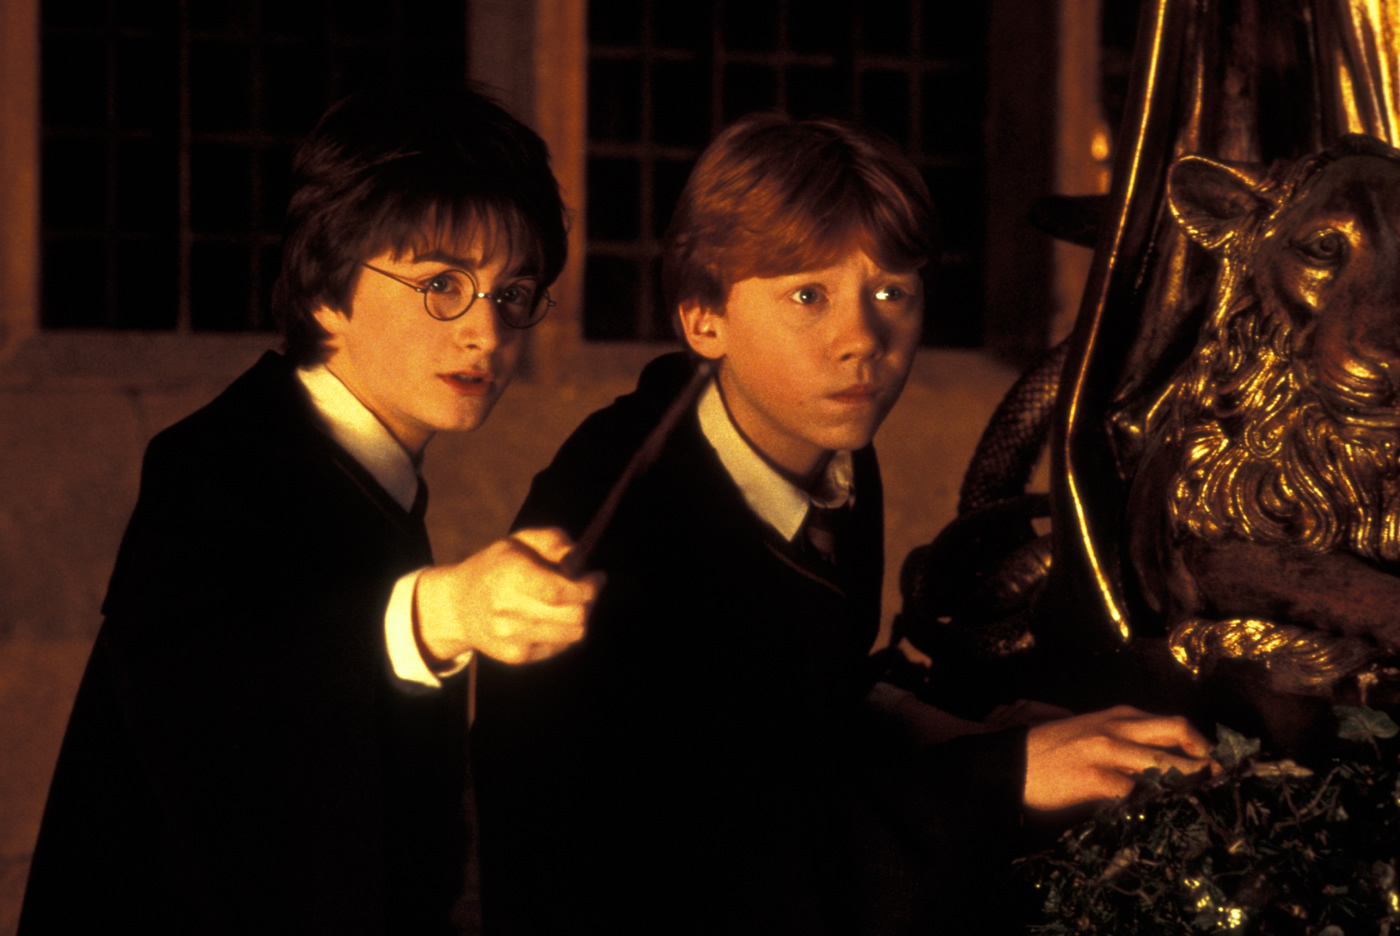 Ron und Harry halten Zauberstäbe.  